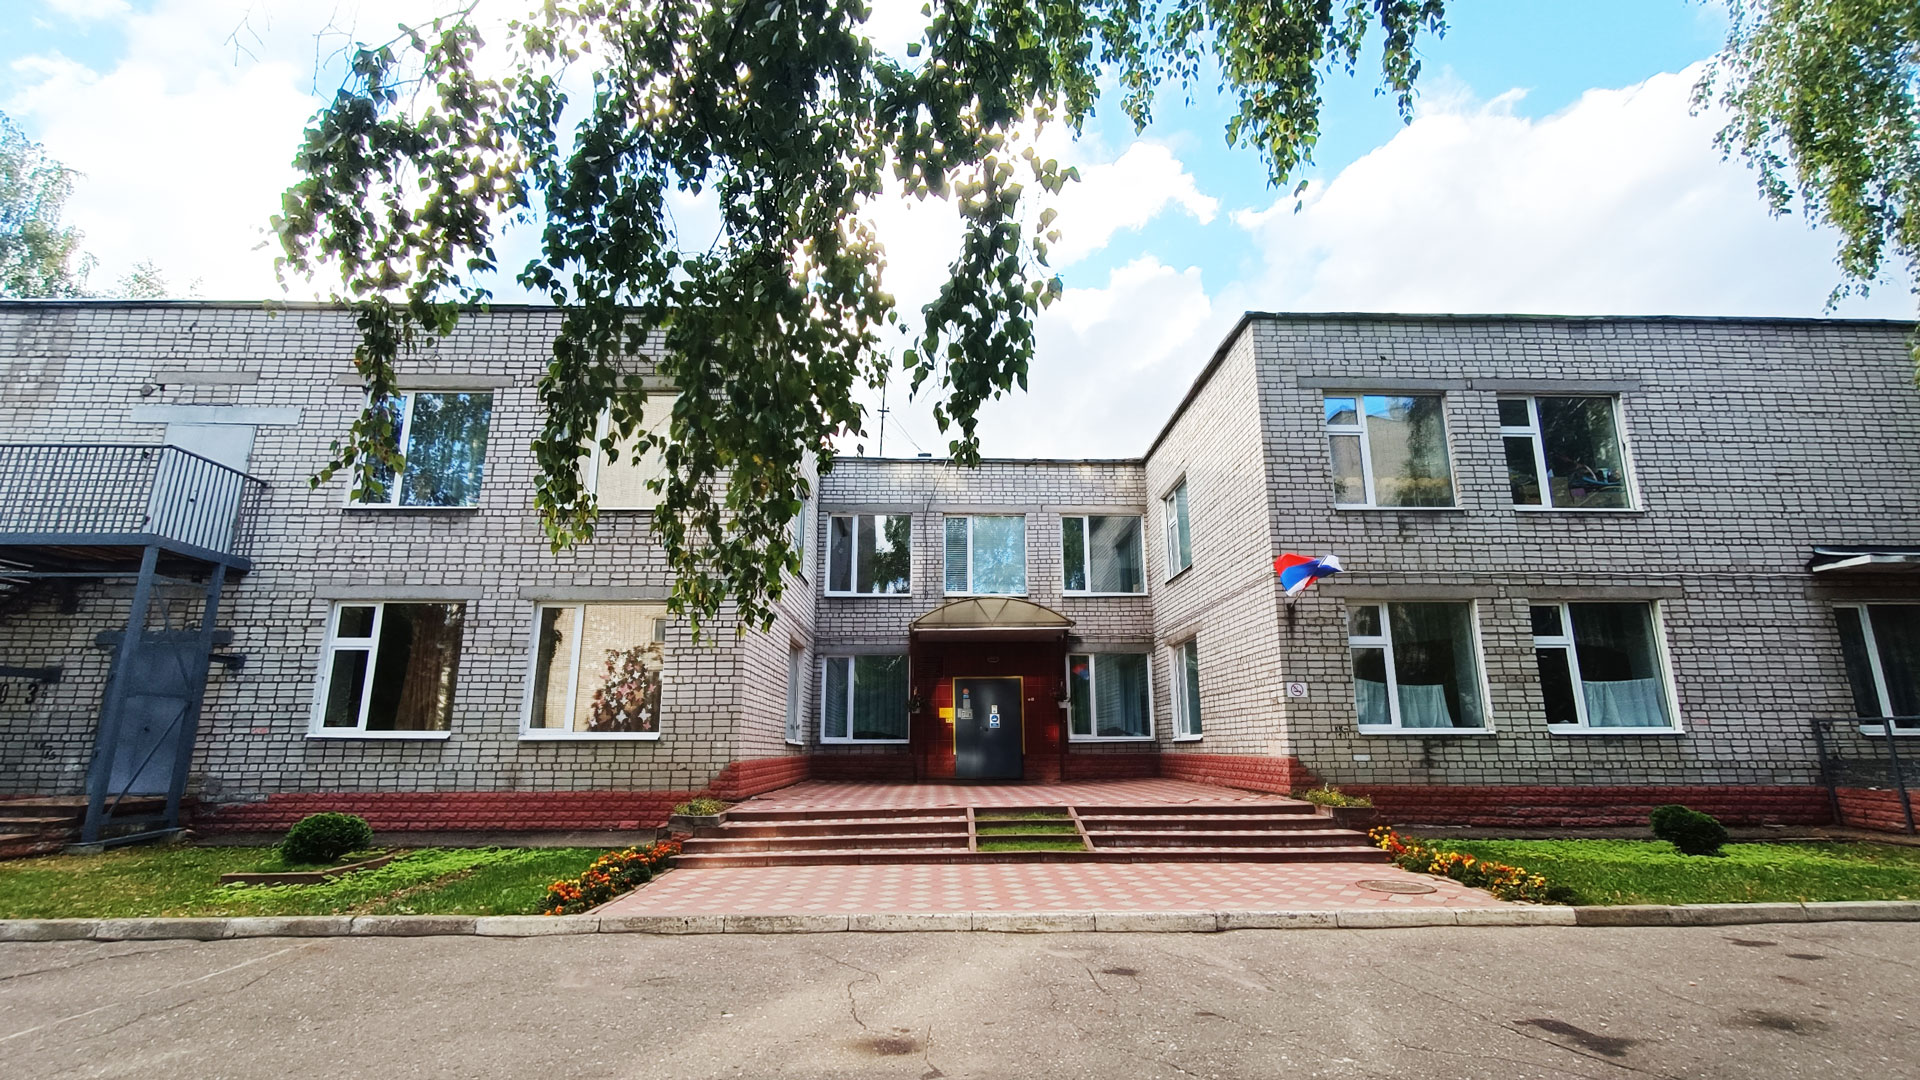 Детский сад 102 Ярославль: общий вид здания (ул. Володарского, 3а).